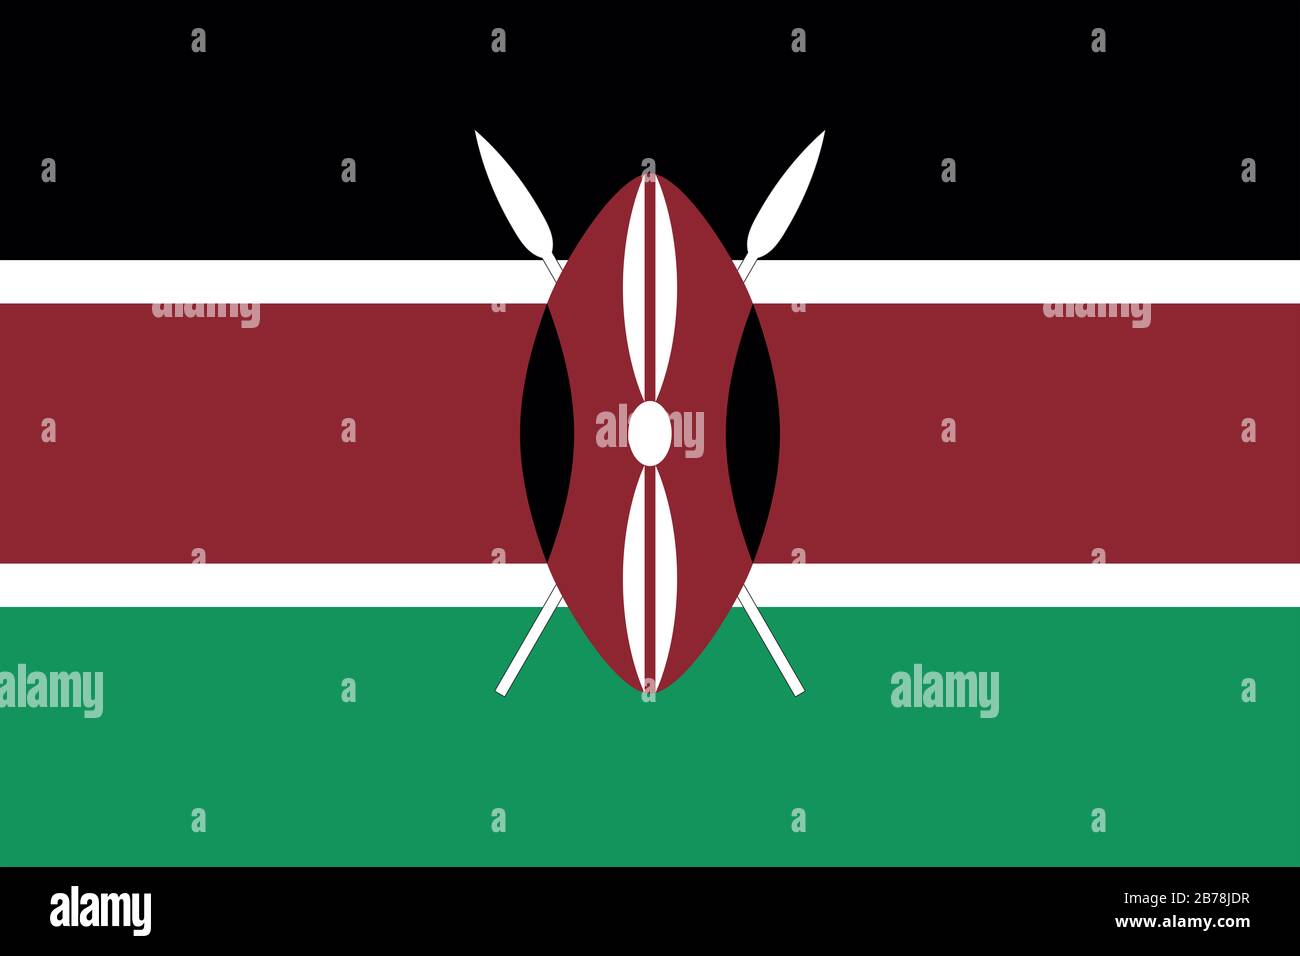 Flagge Kenias - Standardverhältnis der kenianischen Flagge - True RGB-Farbmodus Stockfoto